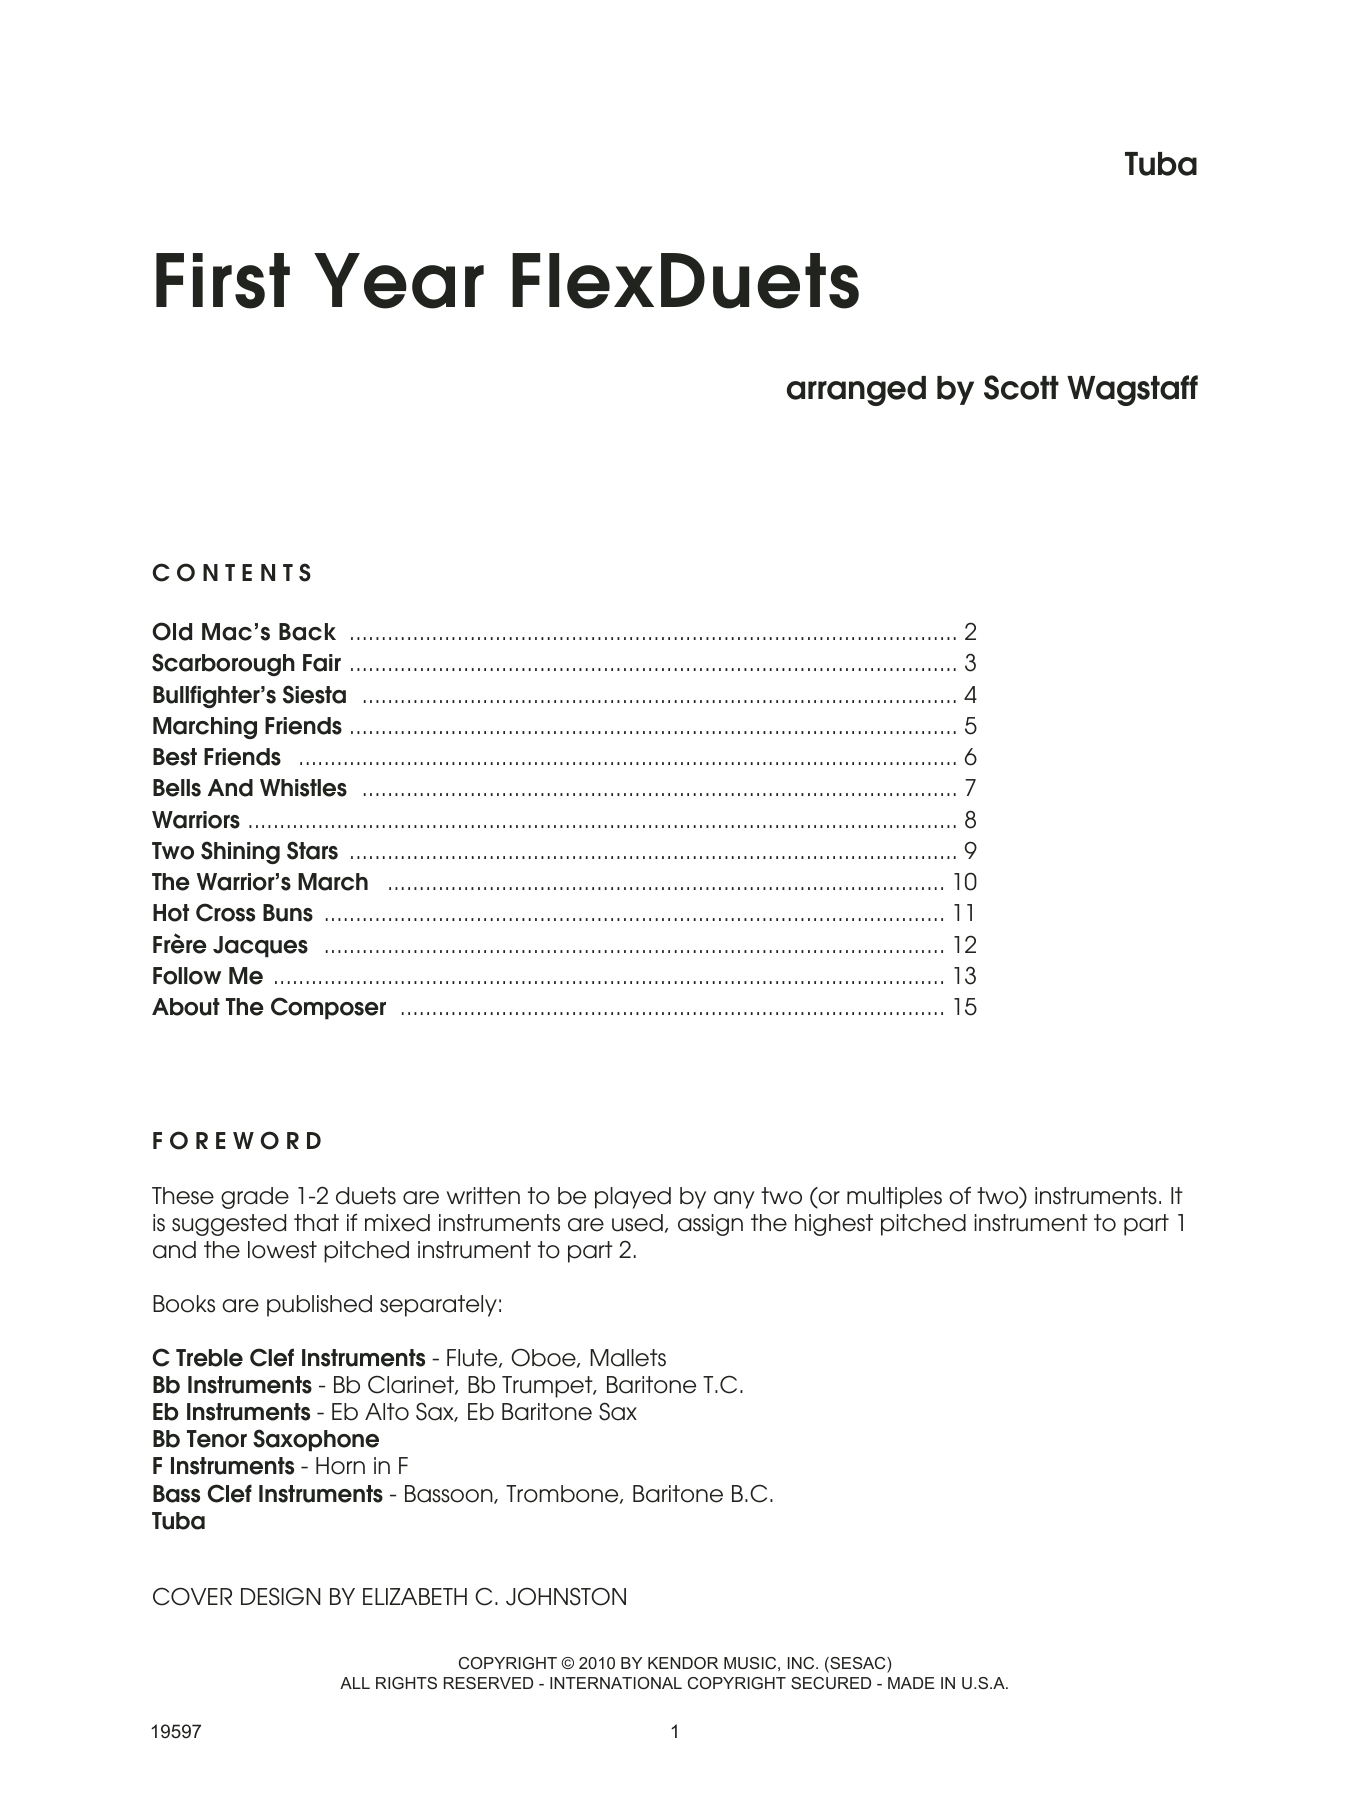 First Year FlexDuets - Tuba (Brass Ensemble) von Scott Wagstaff